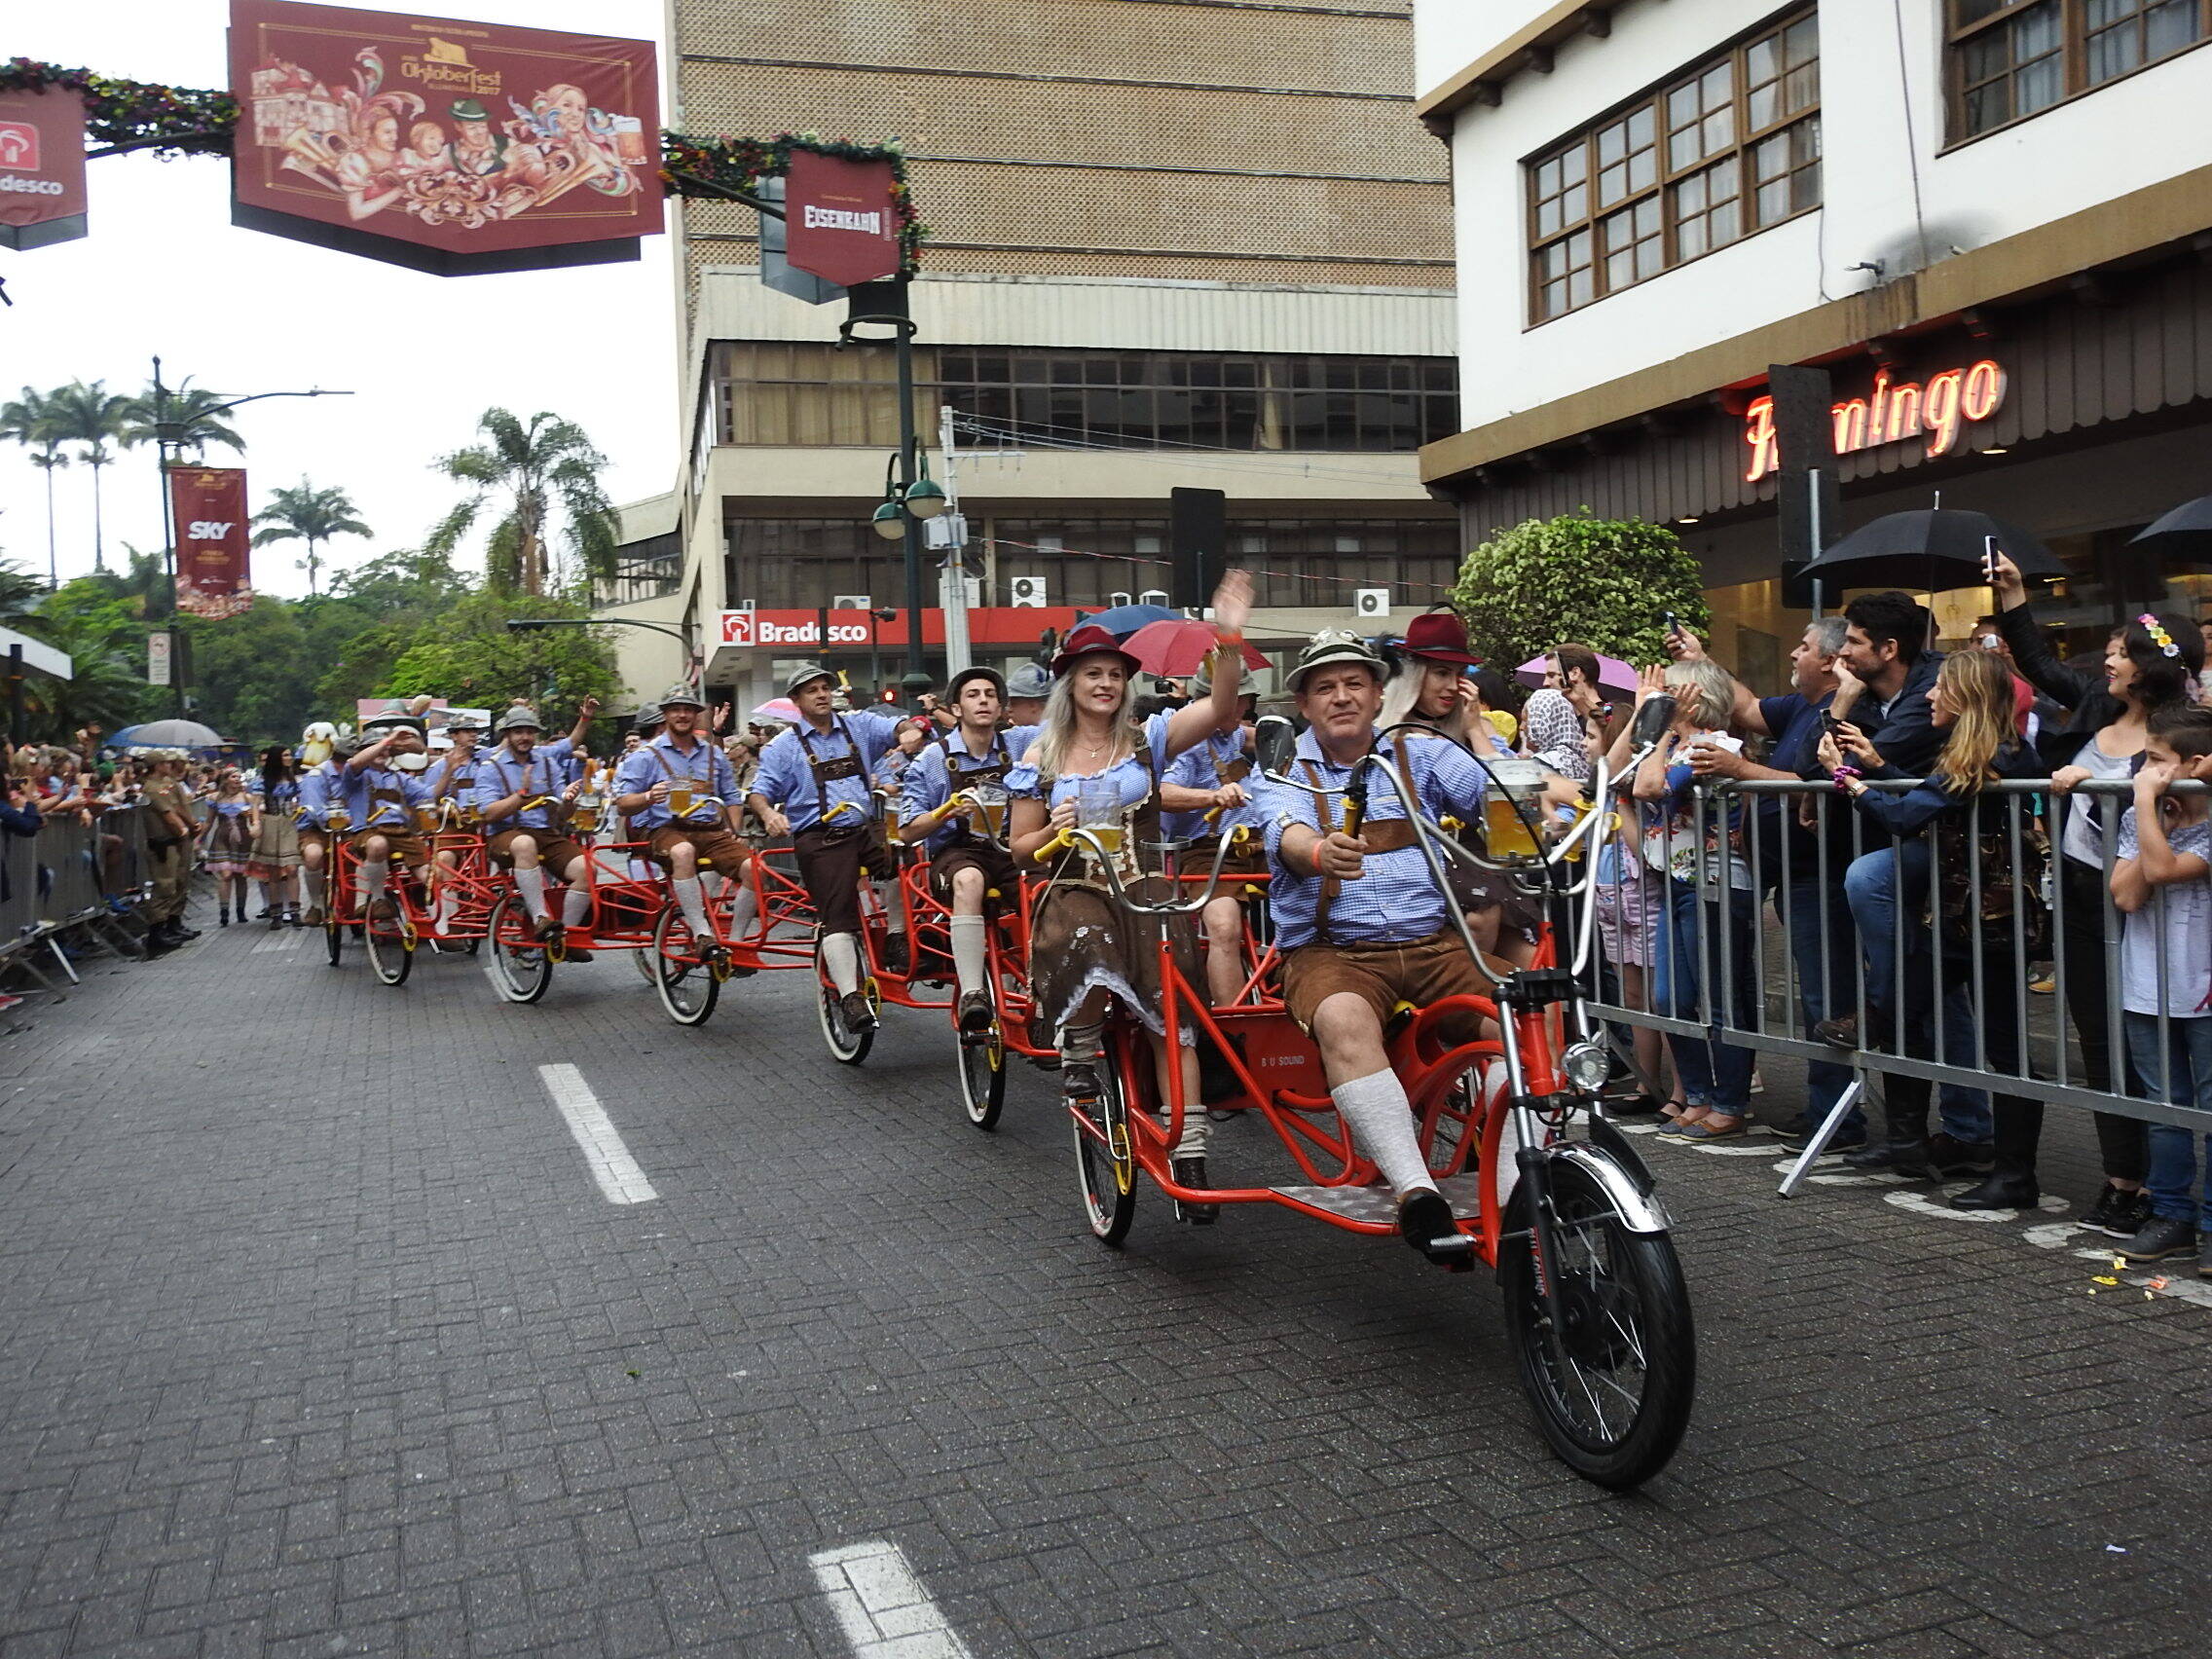 Os desfiles, com suas apresentações de grupos tradicionais, também são parte integral do festival da cerveja. Foto: Reprodução/Flickr/JAIME BATISTA DA SILVA